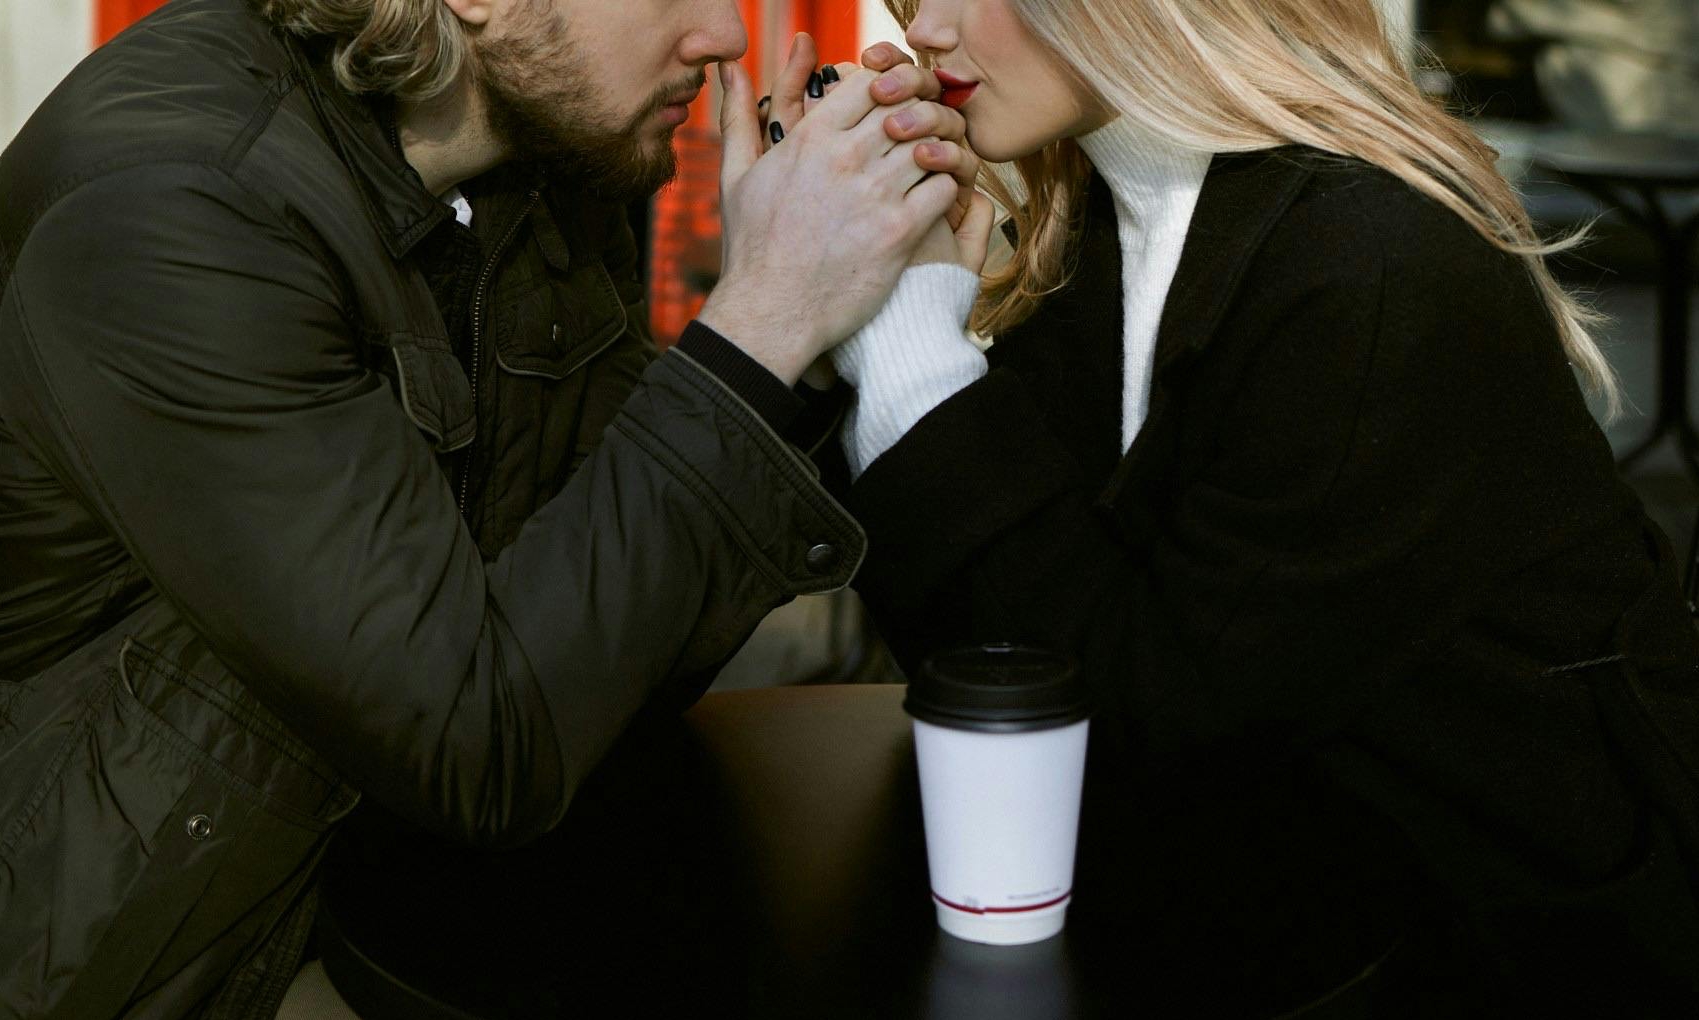 Sophia et Jason discutent intensément dans un café confortable | Source : Pexels